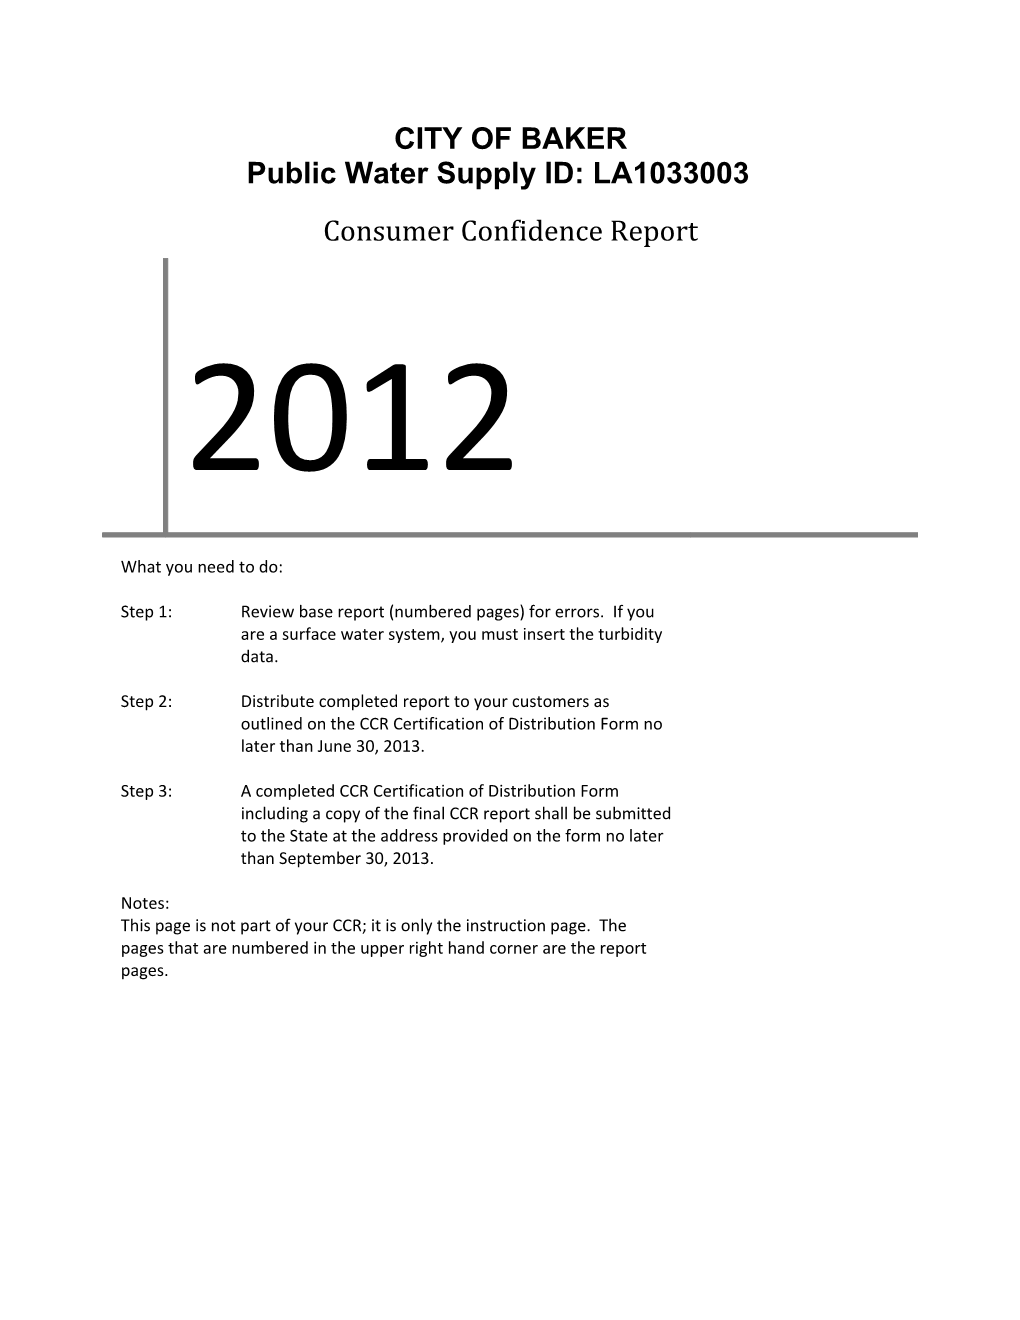 Public Water Supply ID: LA1033003